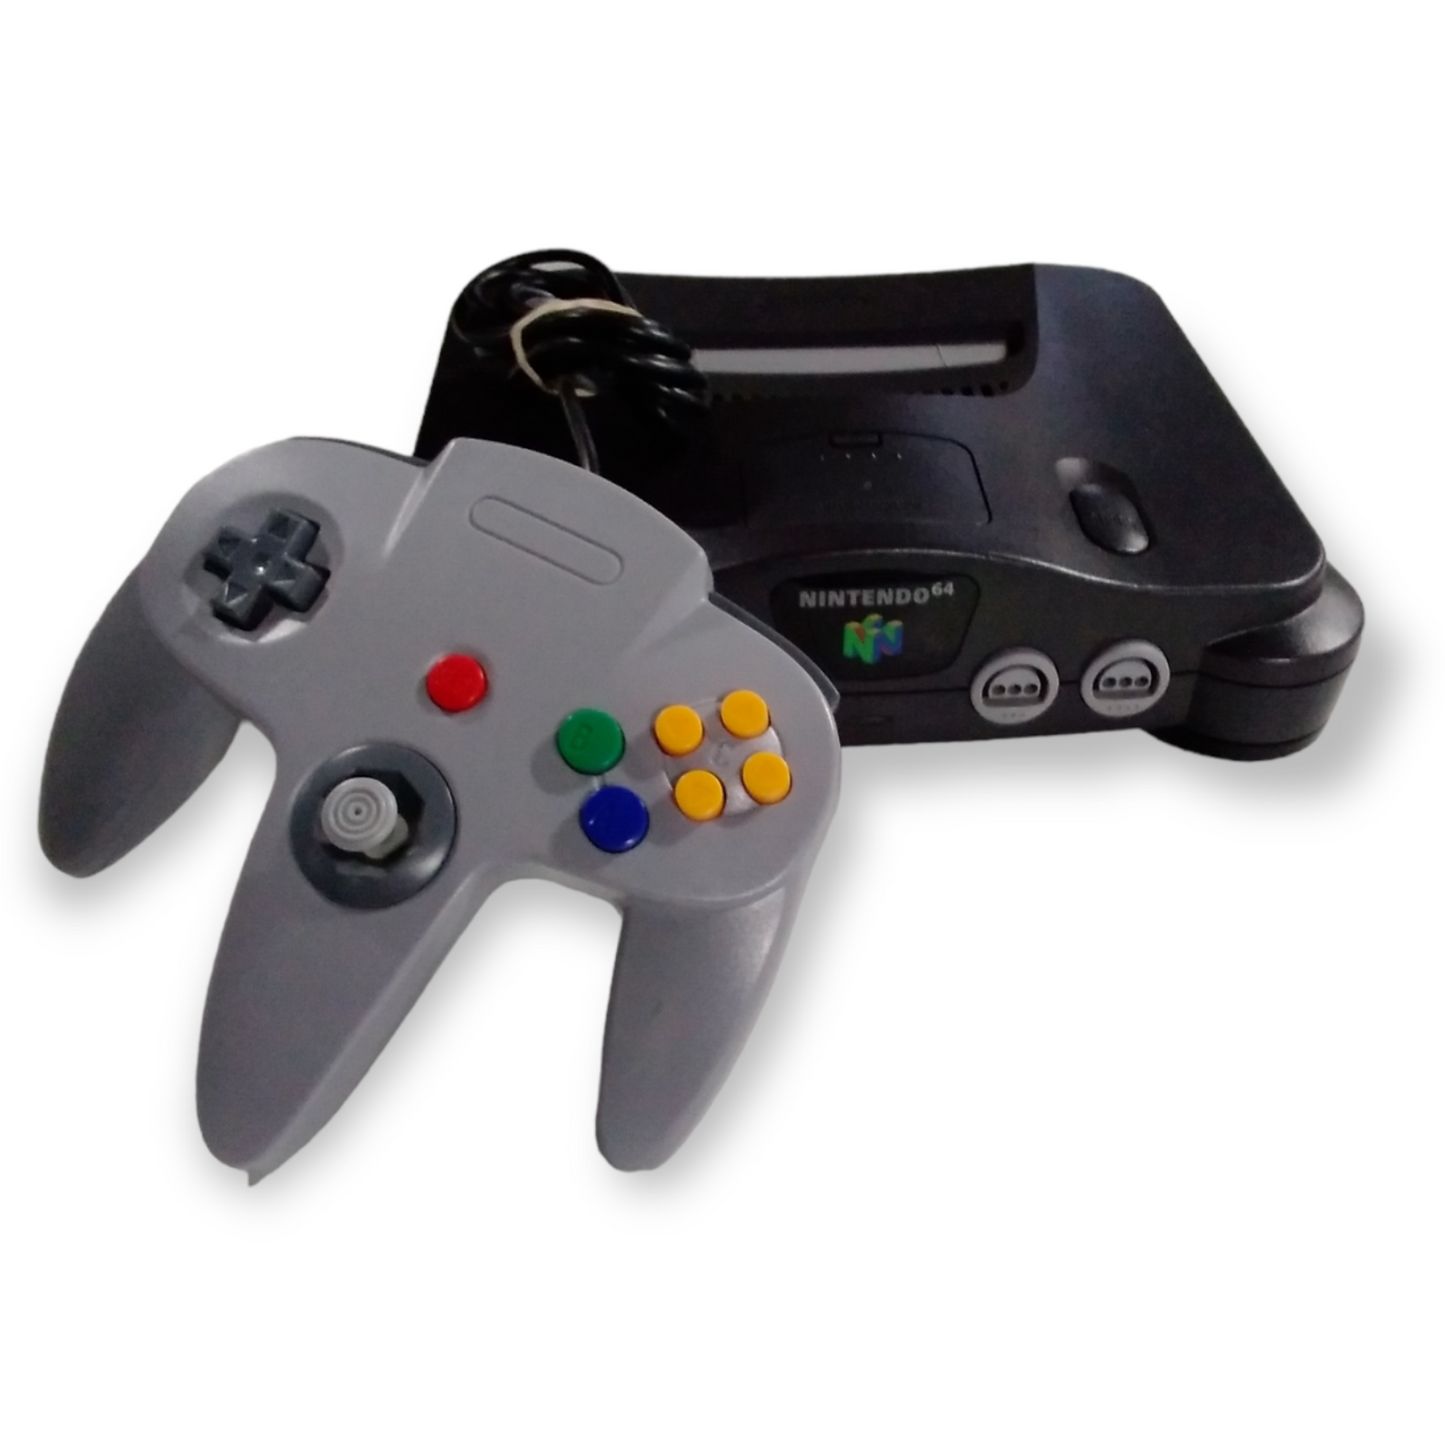 Nintendo 64 Black